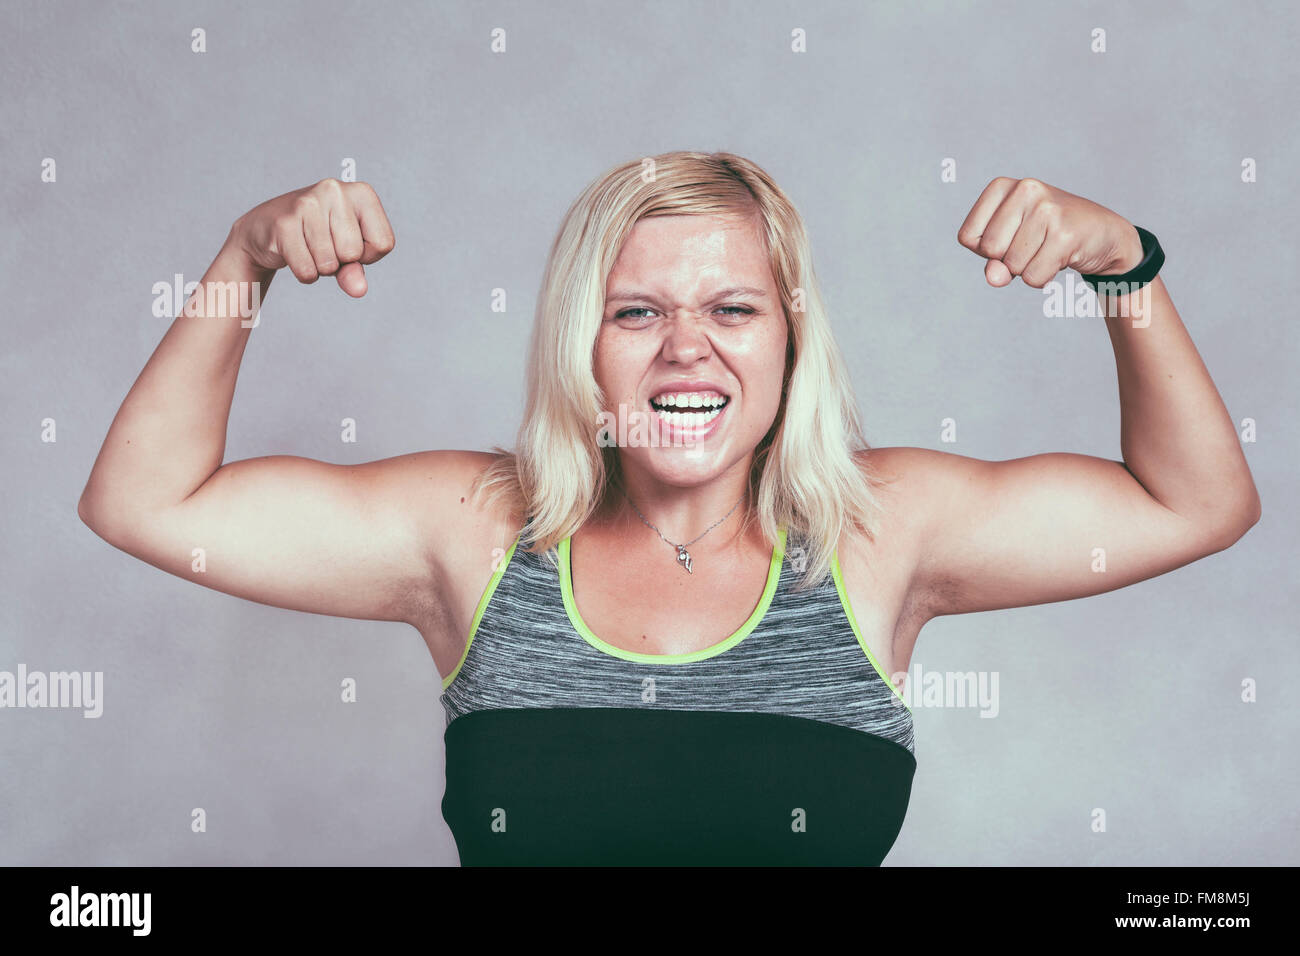 Strong Woman flexing muscles excités des muscles. Jeune femme sportive blonde montrant des armes et biceps. Banque D'Images